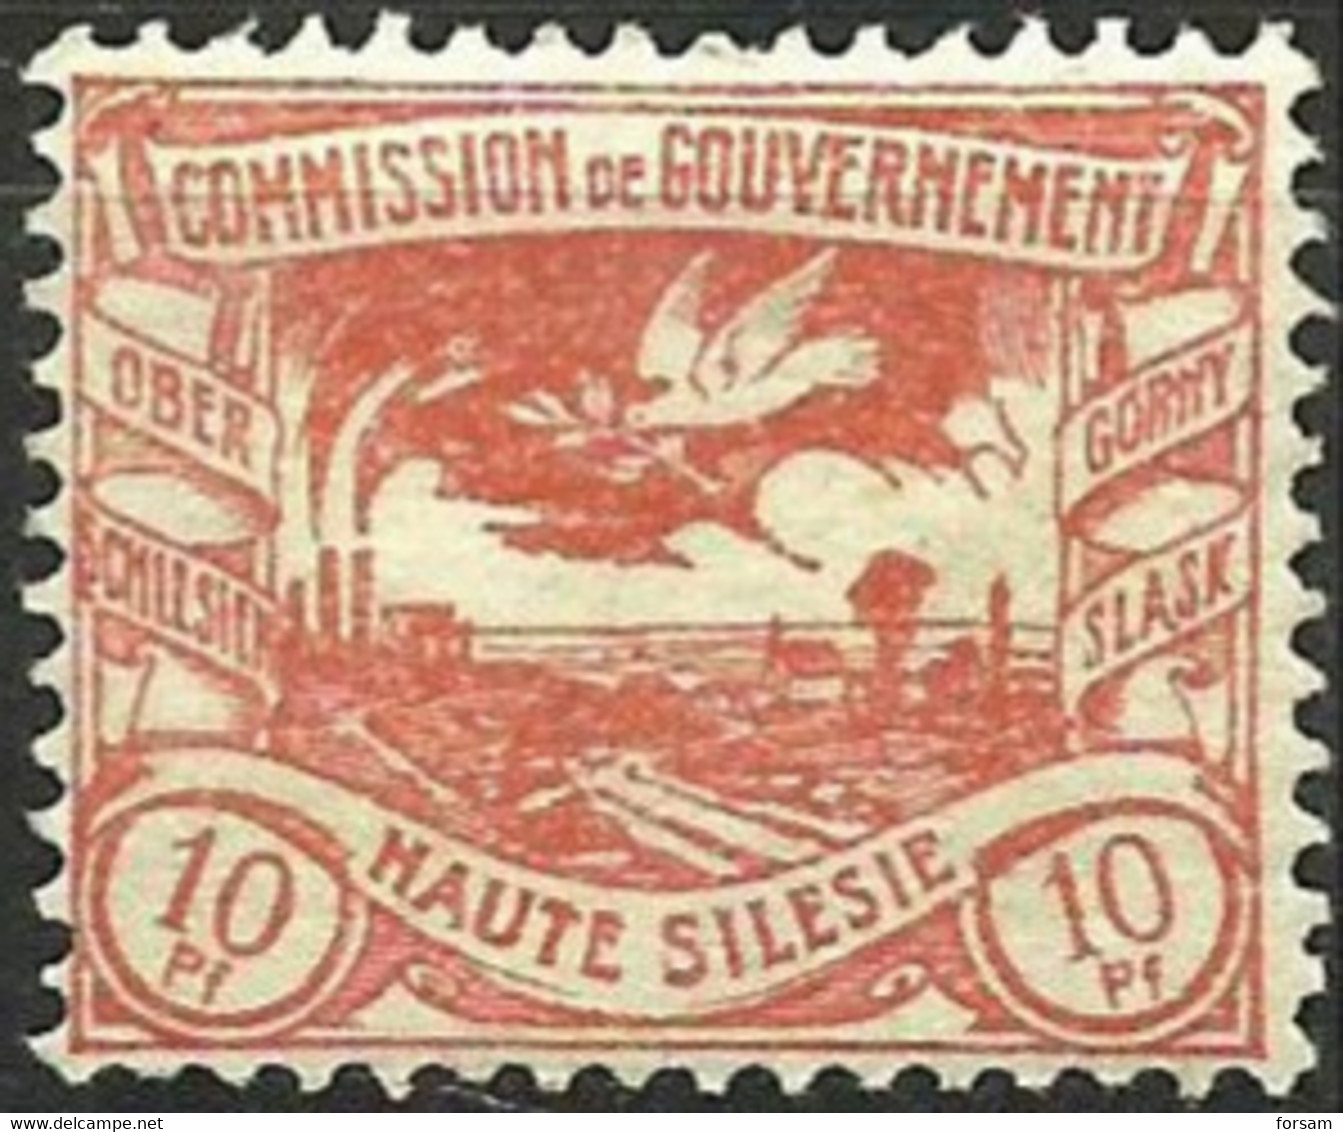 HAUTE SILESIE..1920..Michel # 16...MH. - Unused Stamps